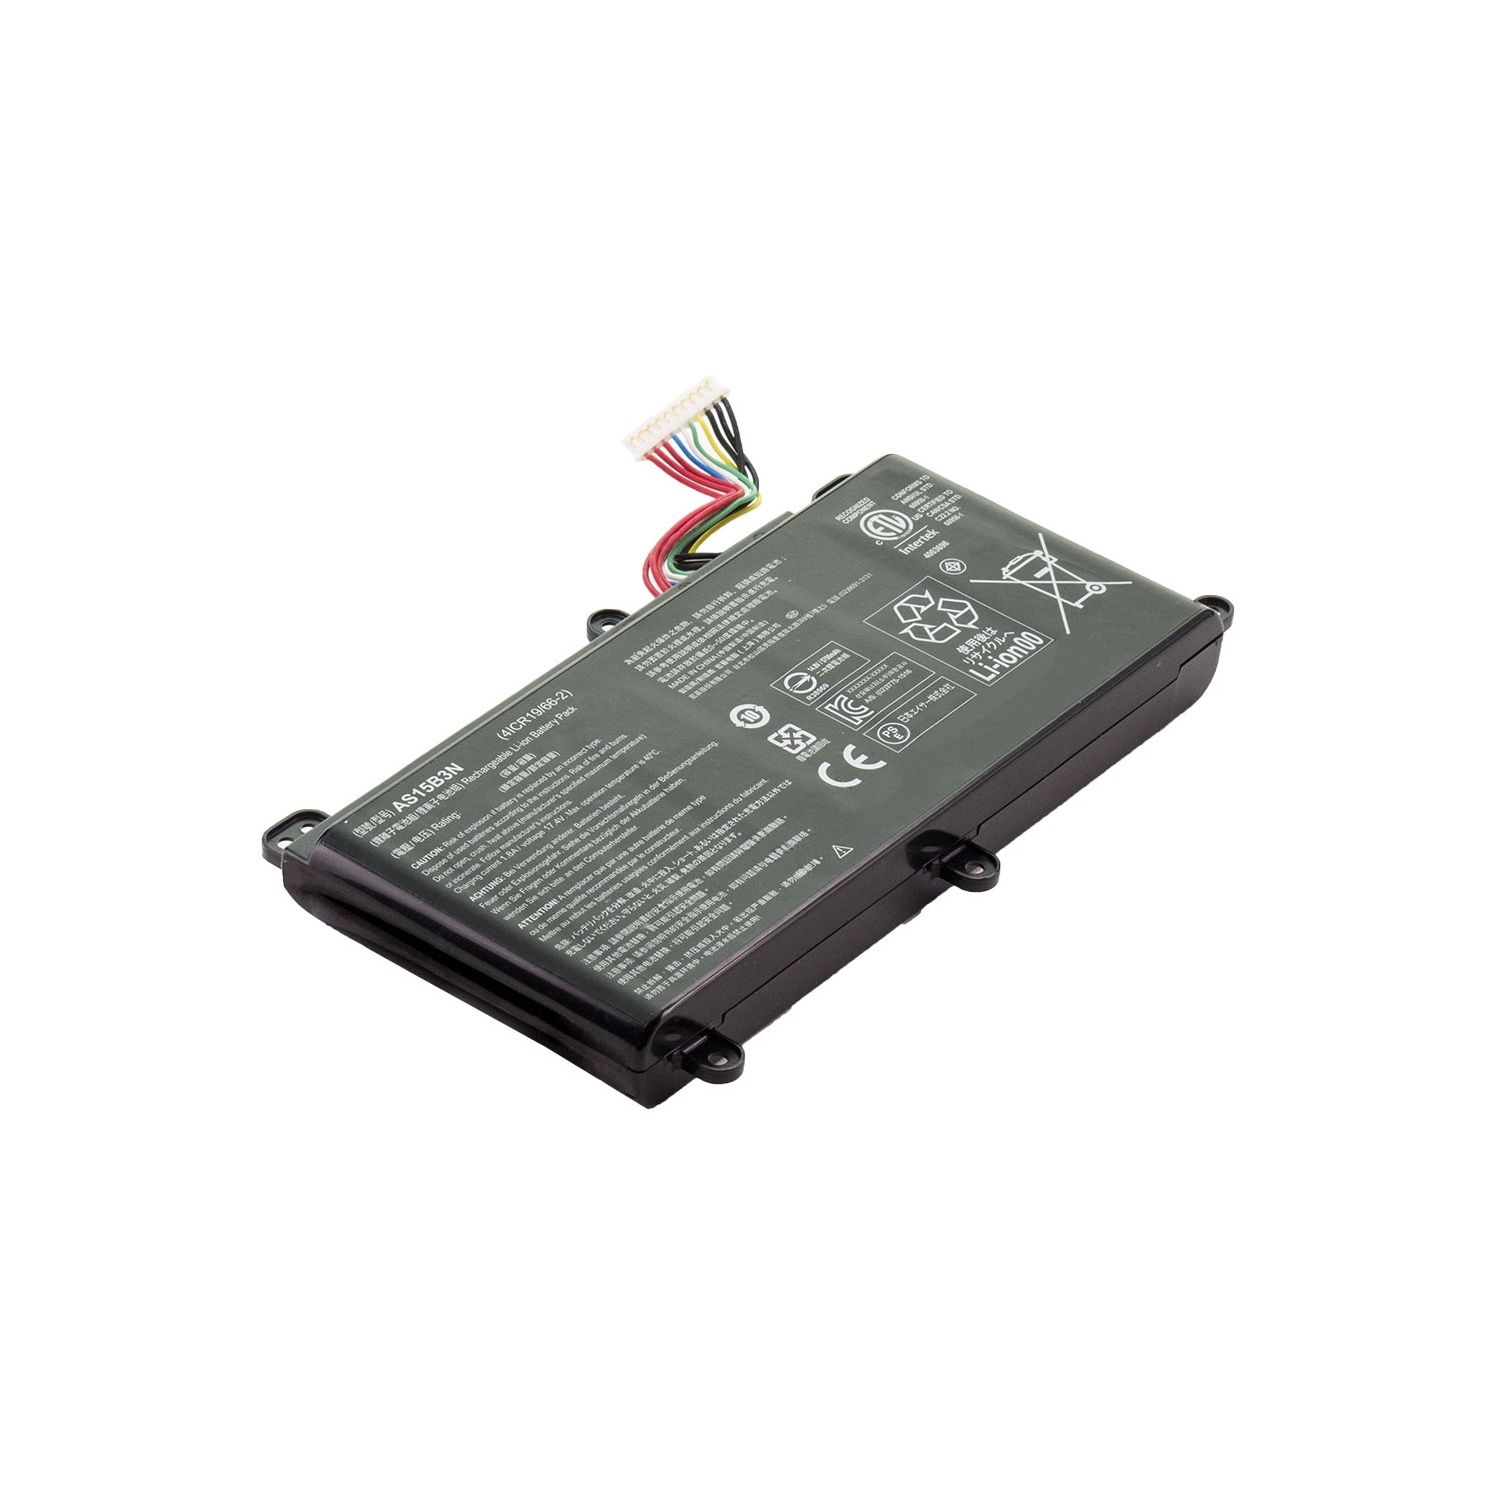 BATTDEPOT NEW Laptop Battery for Acer Predator 15 G9-593-73N6 AS15B3N KT.00803.004 KT.00803.005